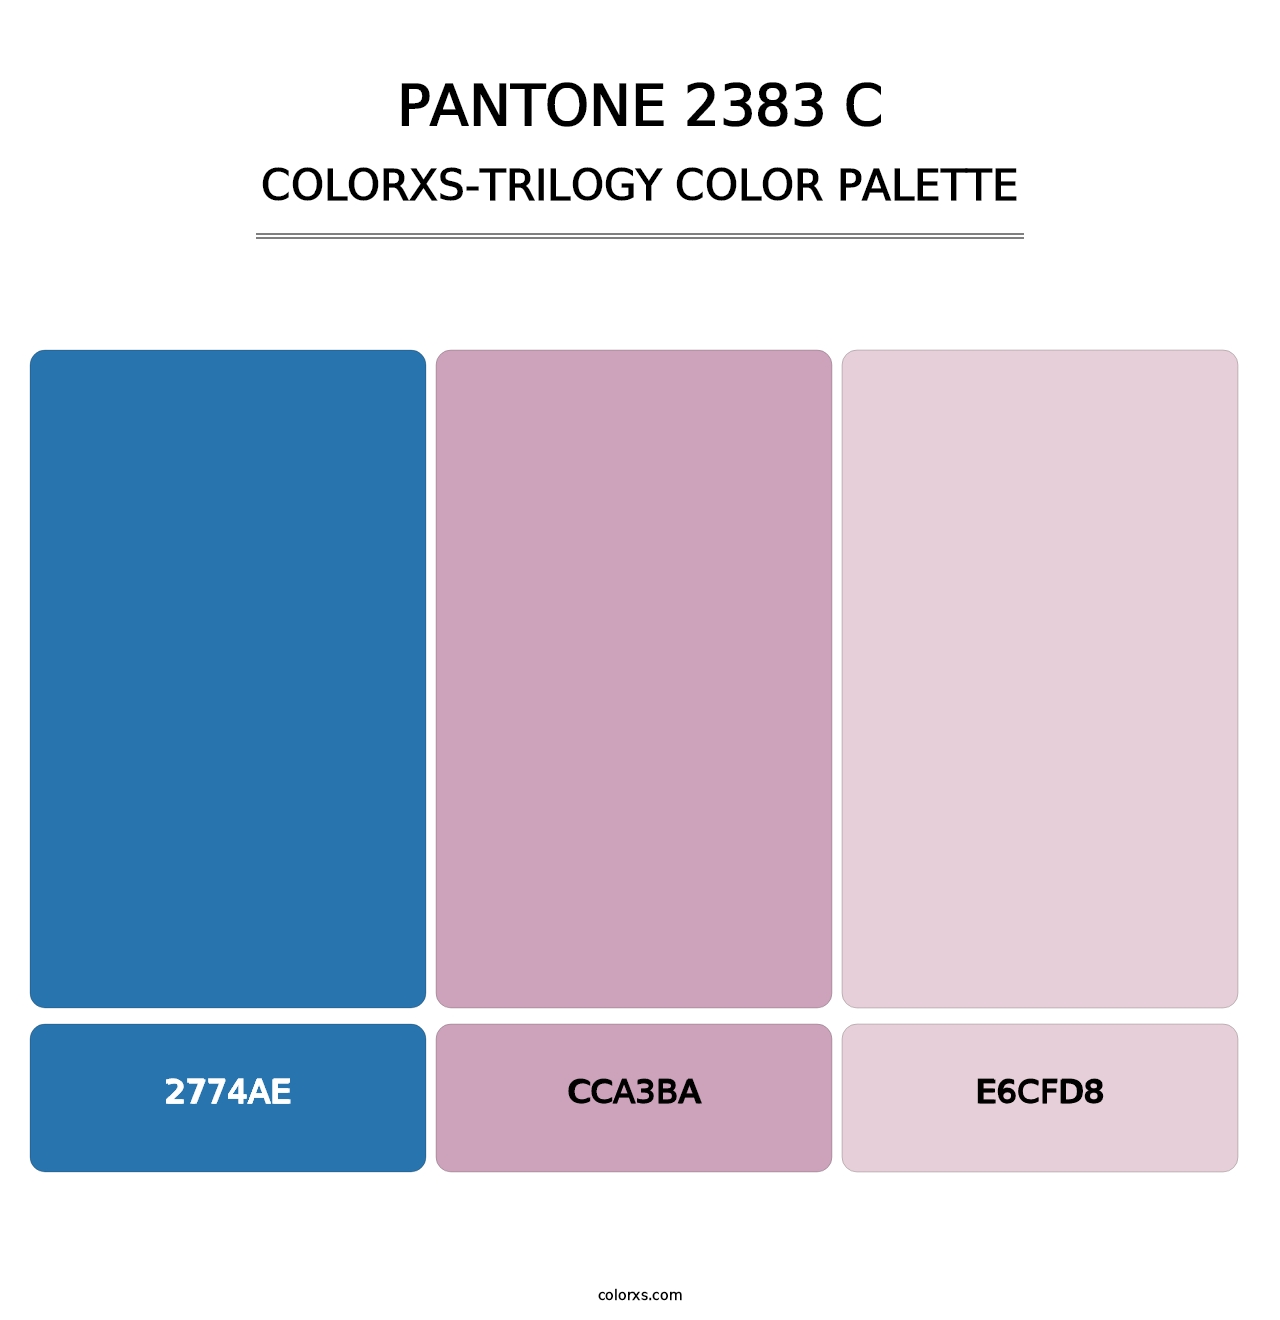 PANTONE 2383 C - Colorxs Trilogy Palette